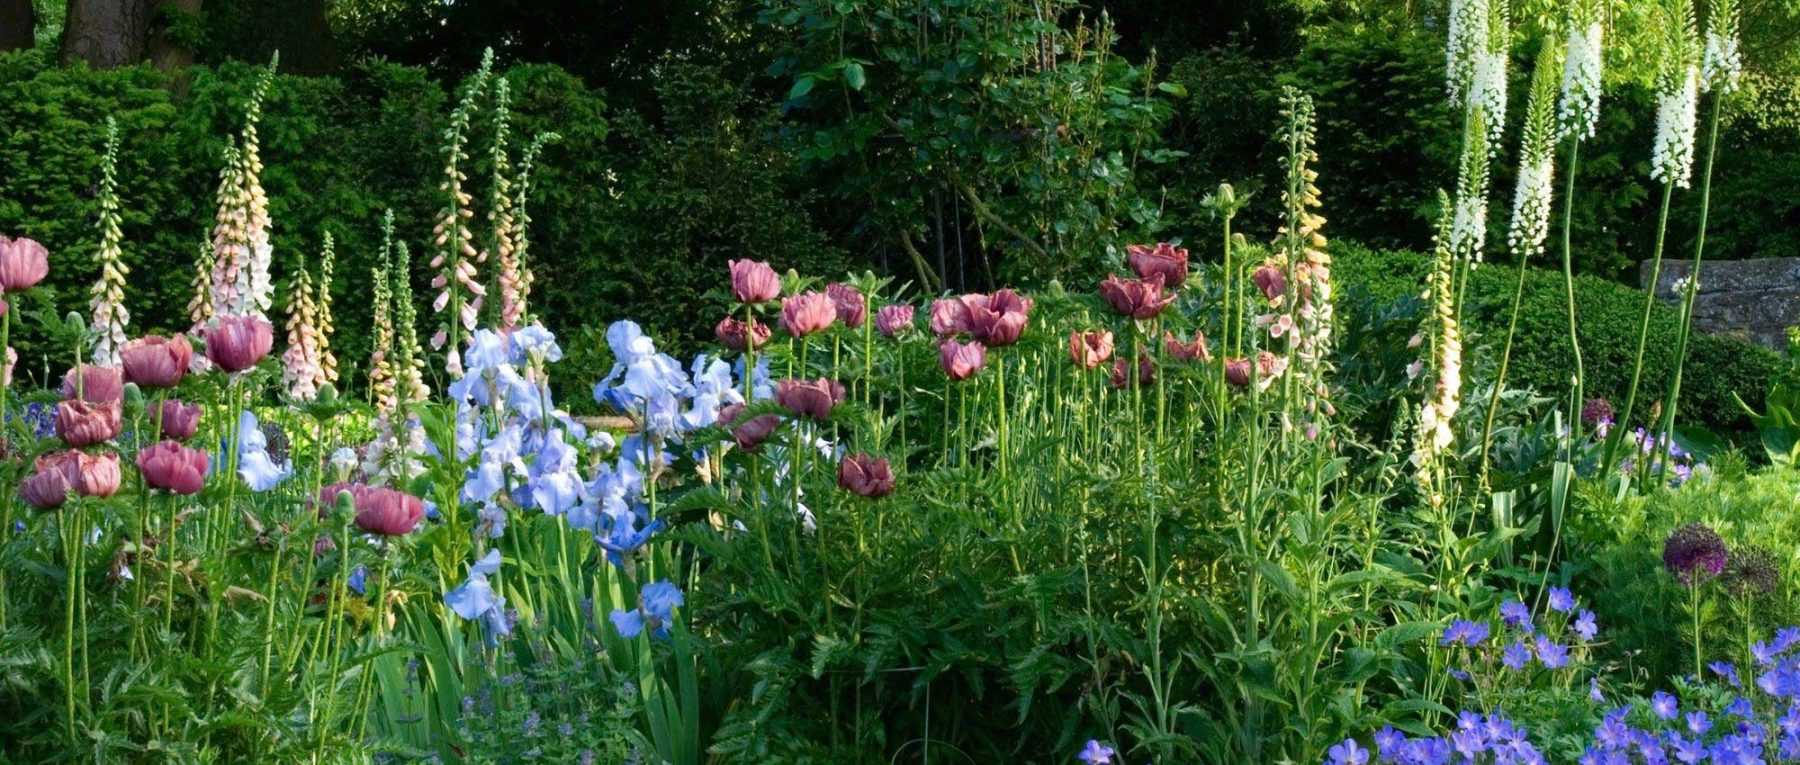 Jardin anglais : 10 plantes emblématiques